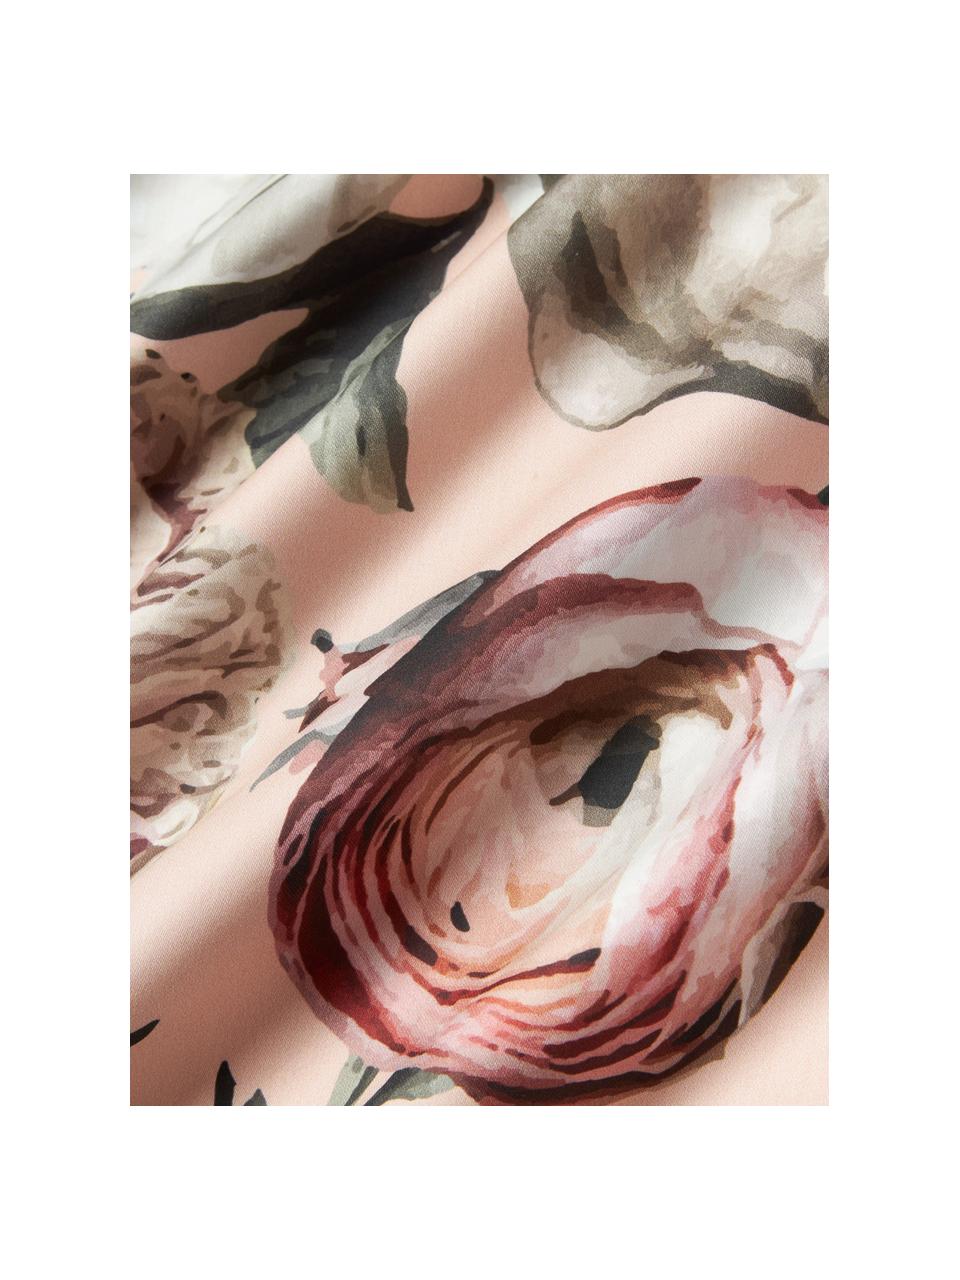 Housse de couette en satin de coton Blossom, Rose pâle, multicolore, larg. 200 x long. 200 cm